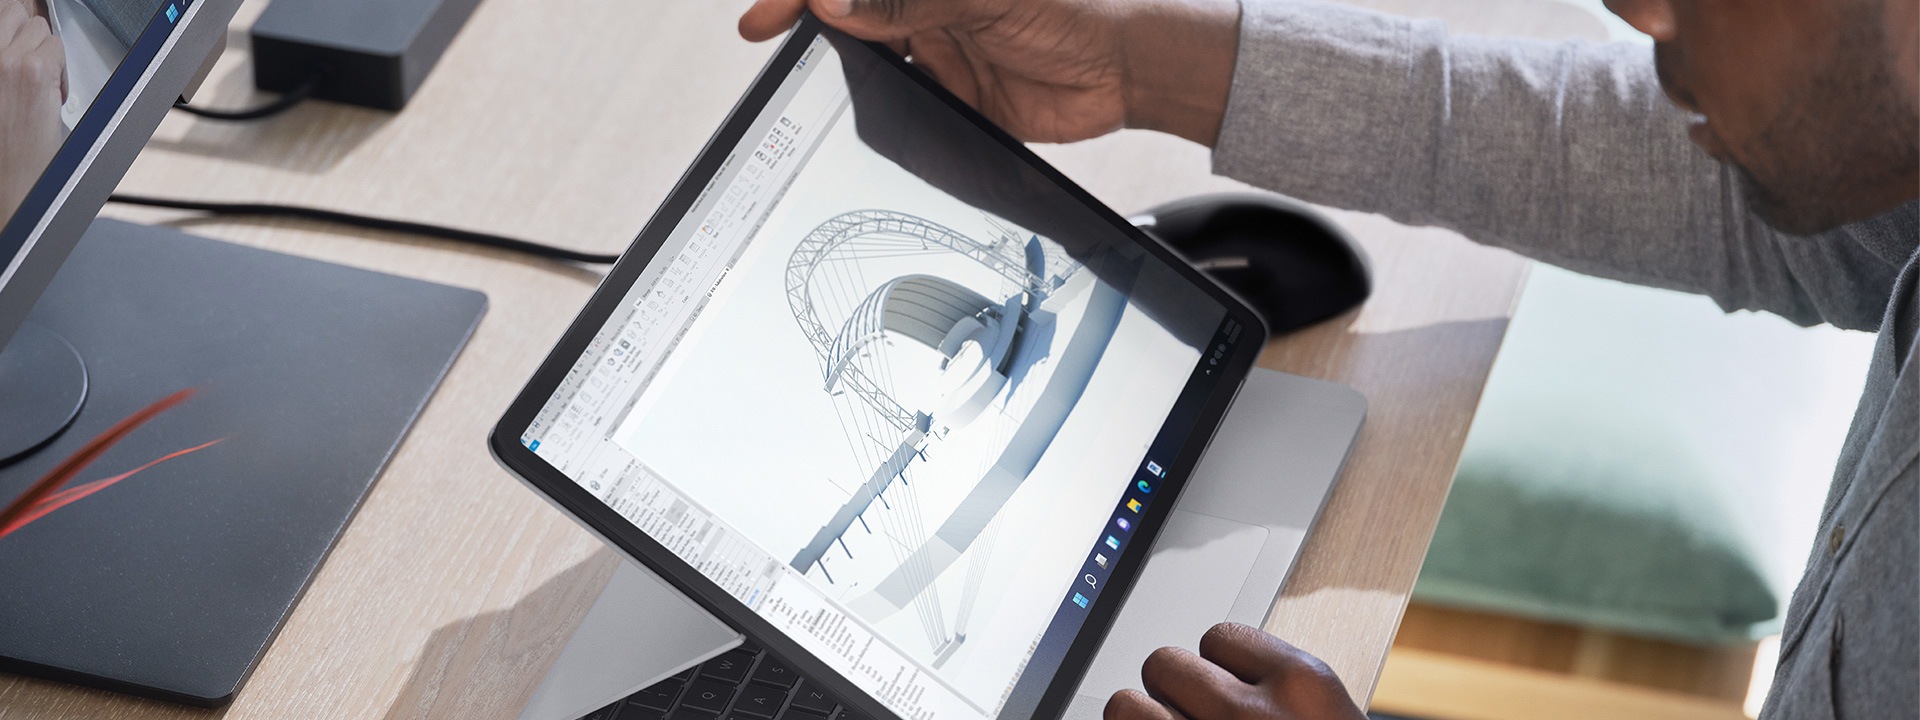 Surface Laptop Studio dilihat dalam mod pentas di meja pejabat rumah